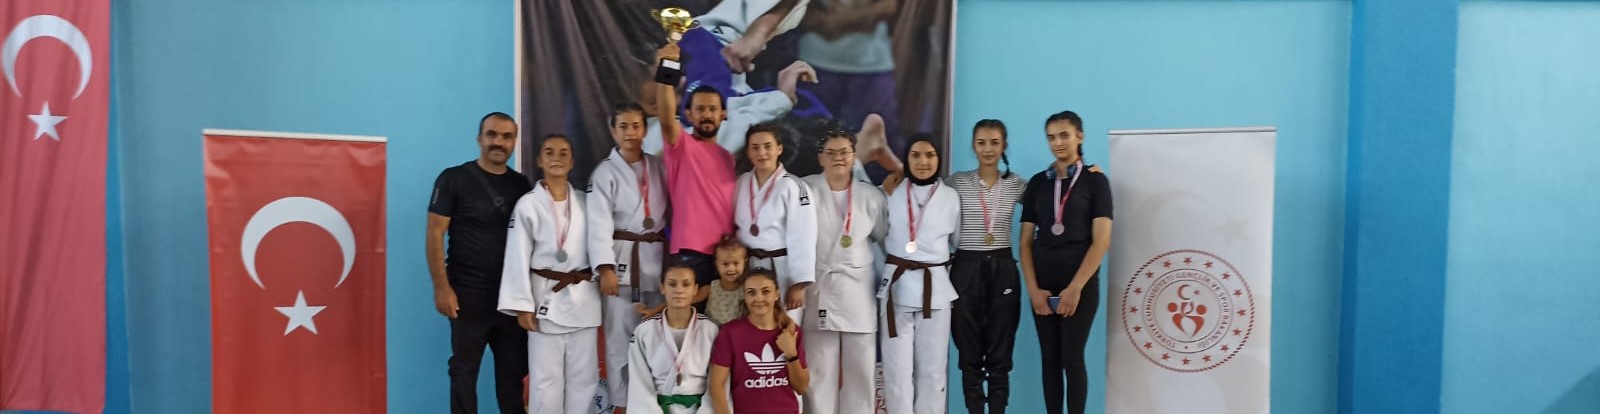 Seydişehir Belediye Spor Kulübü'nden judoda birincilik